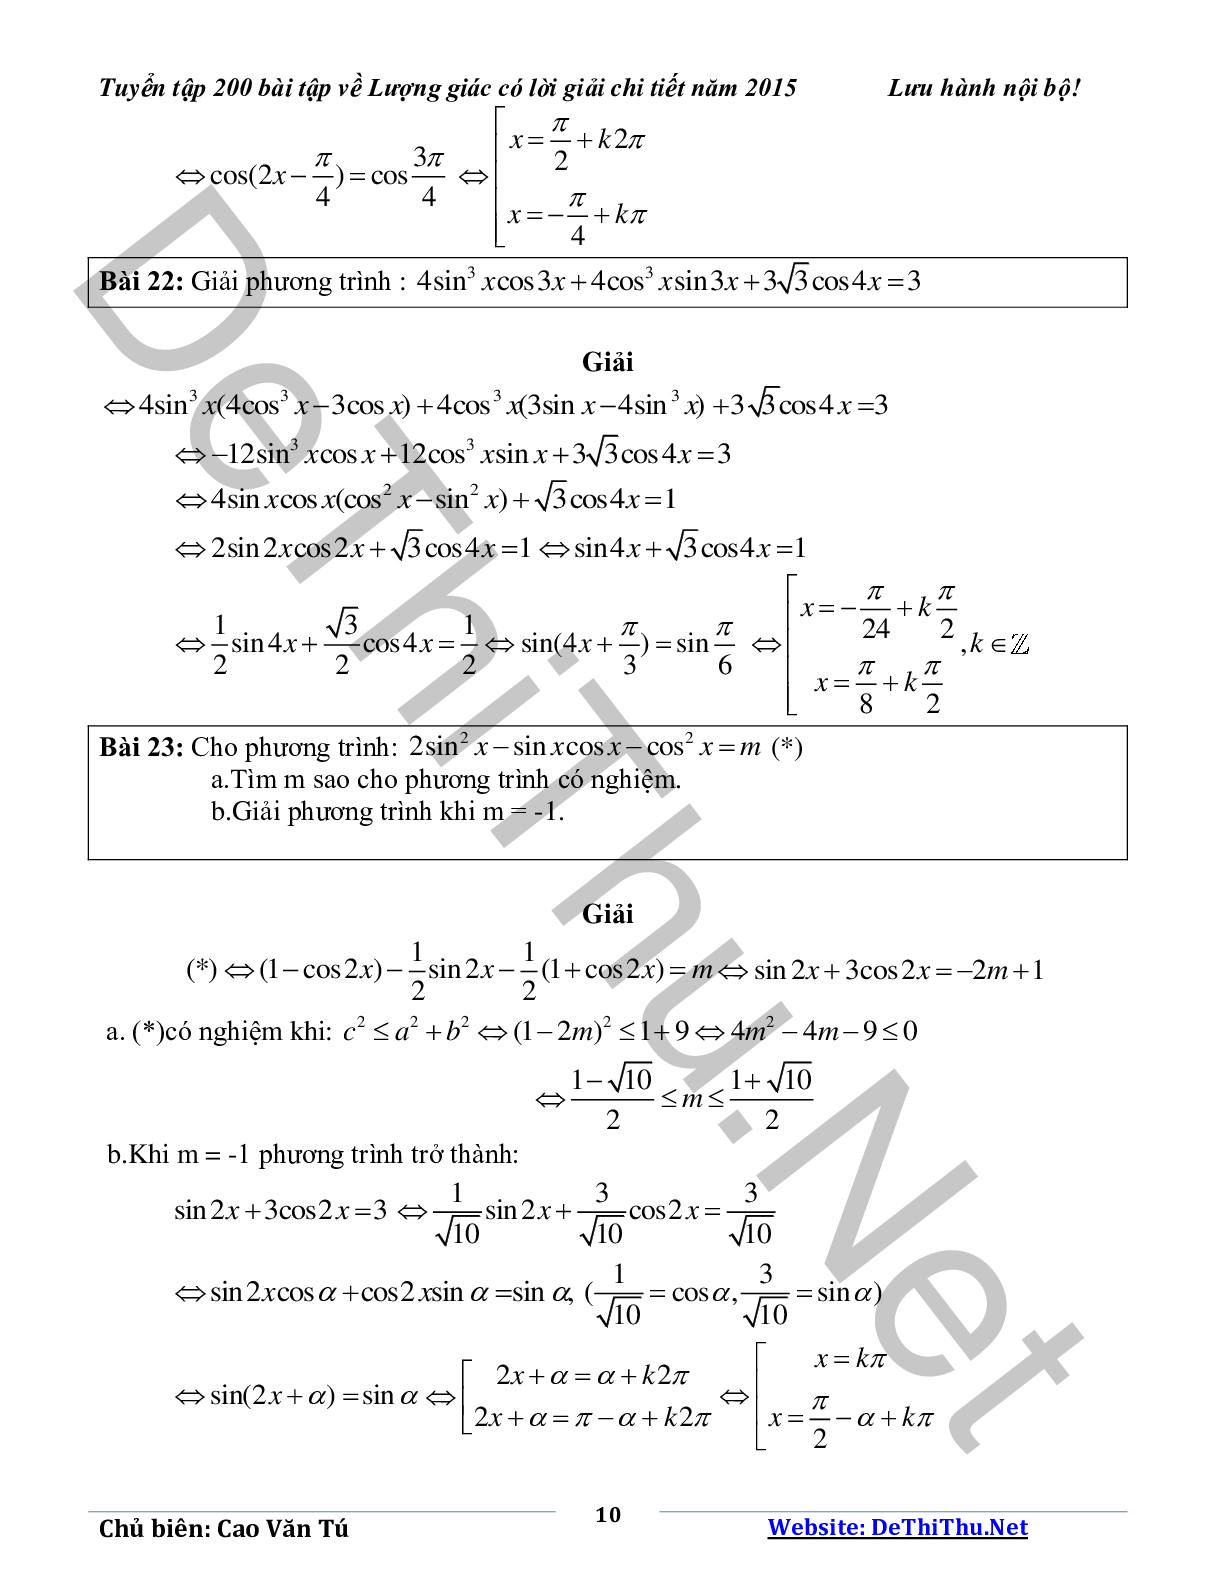 Tuyển tập 200 bài tập lượng giác có lời giải chi tiết năm 2015 (trang 10)